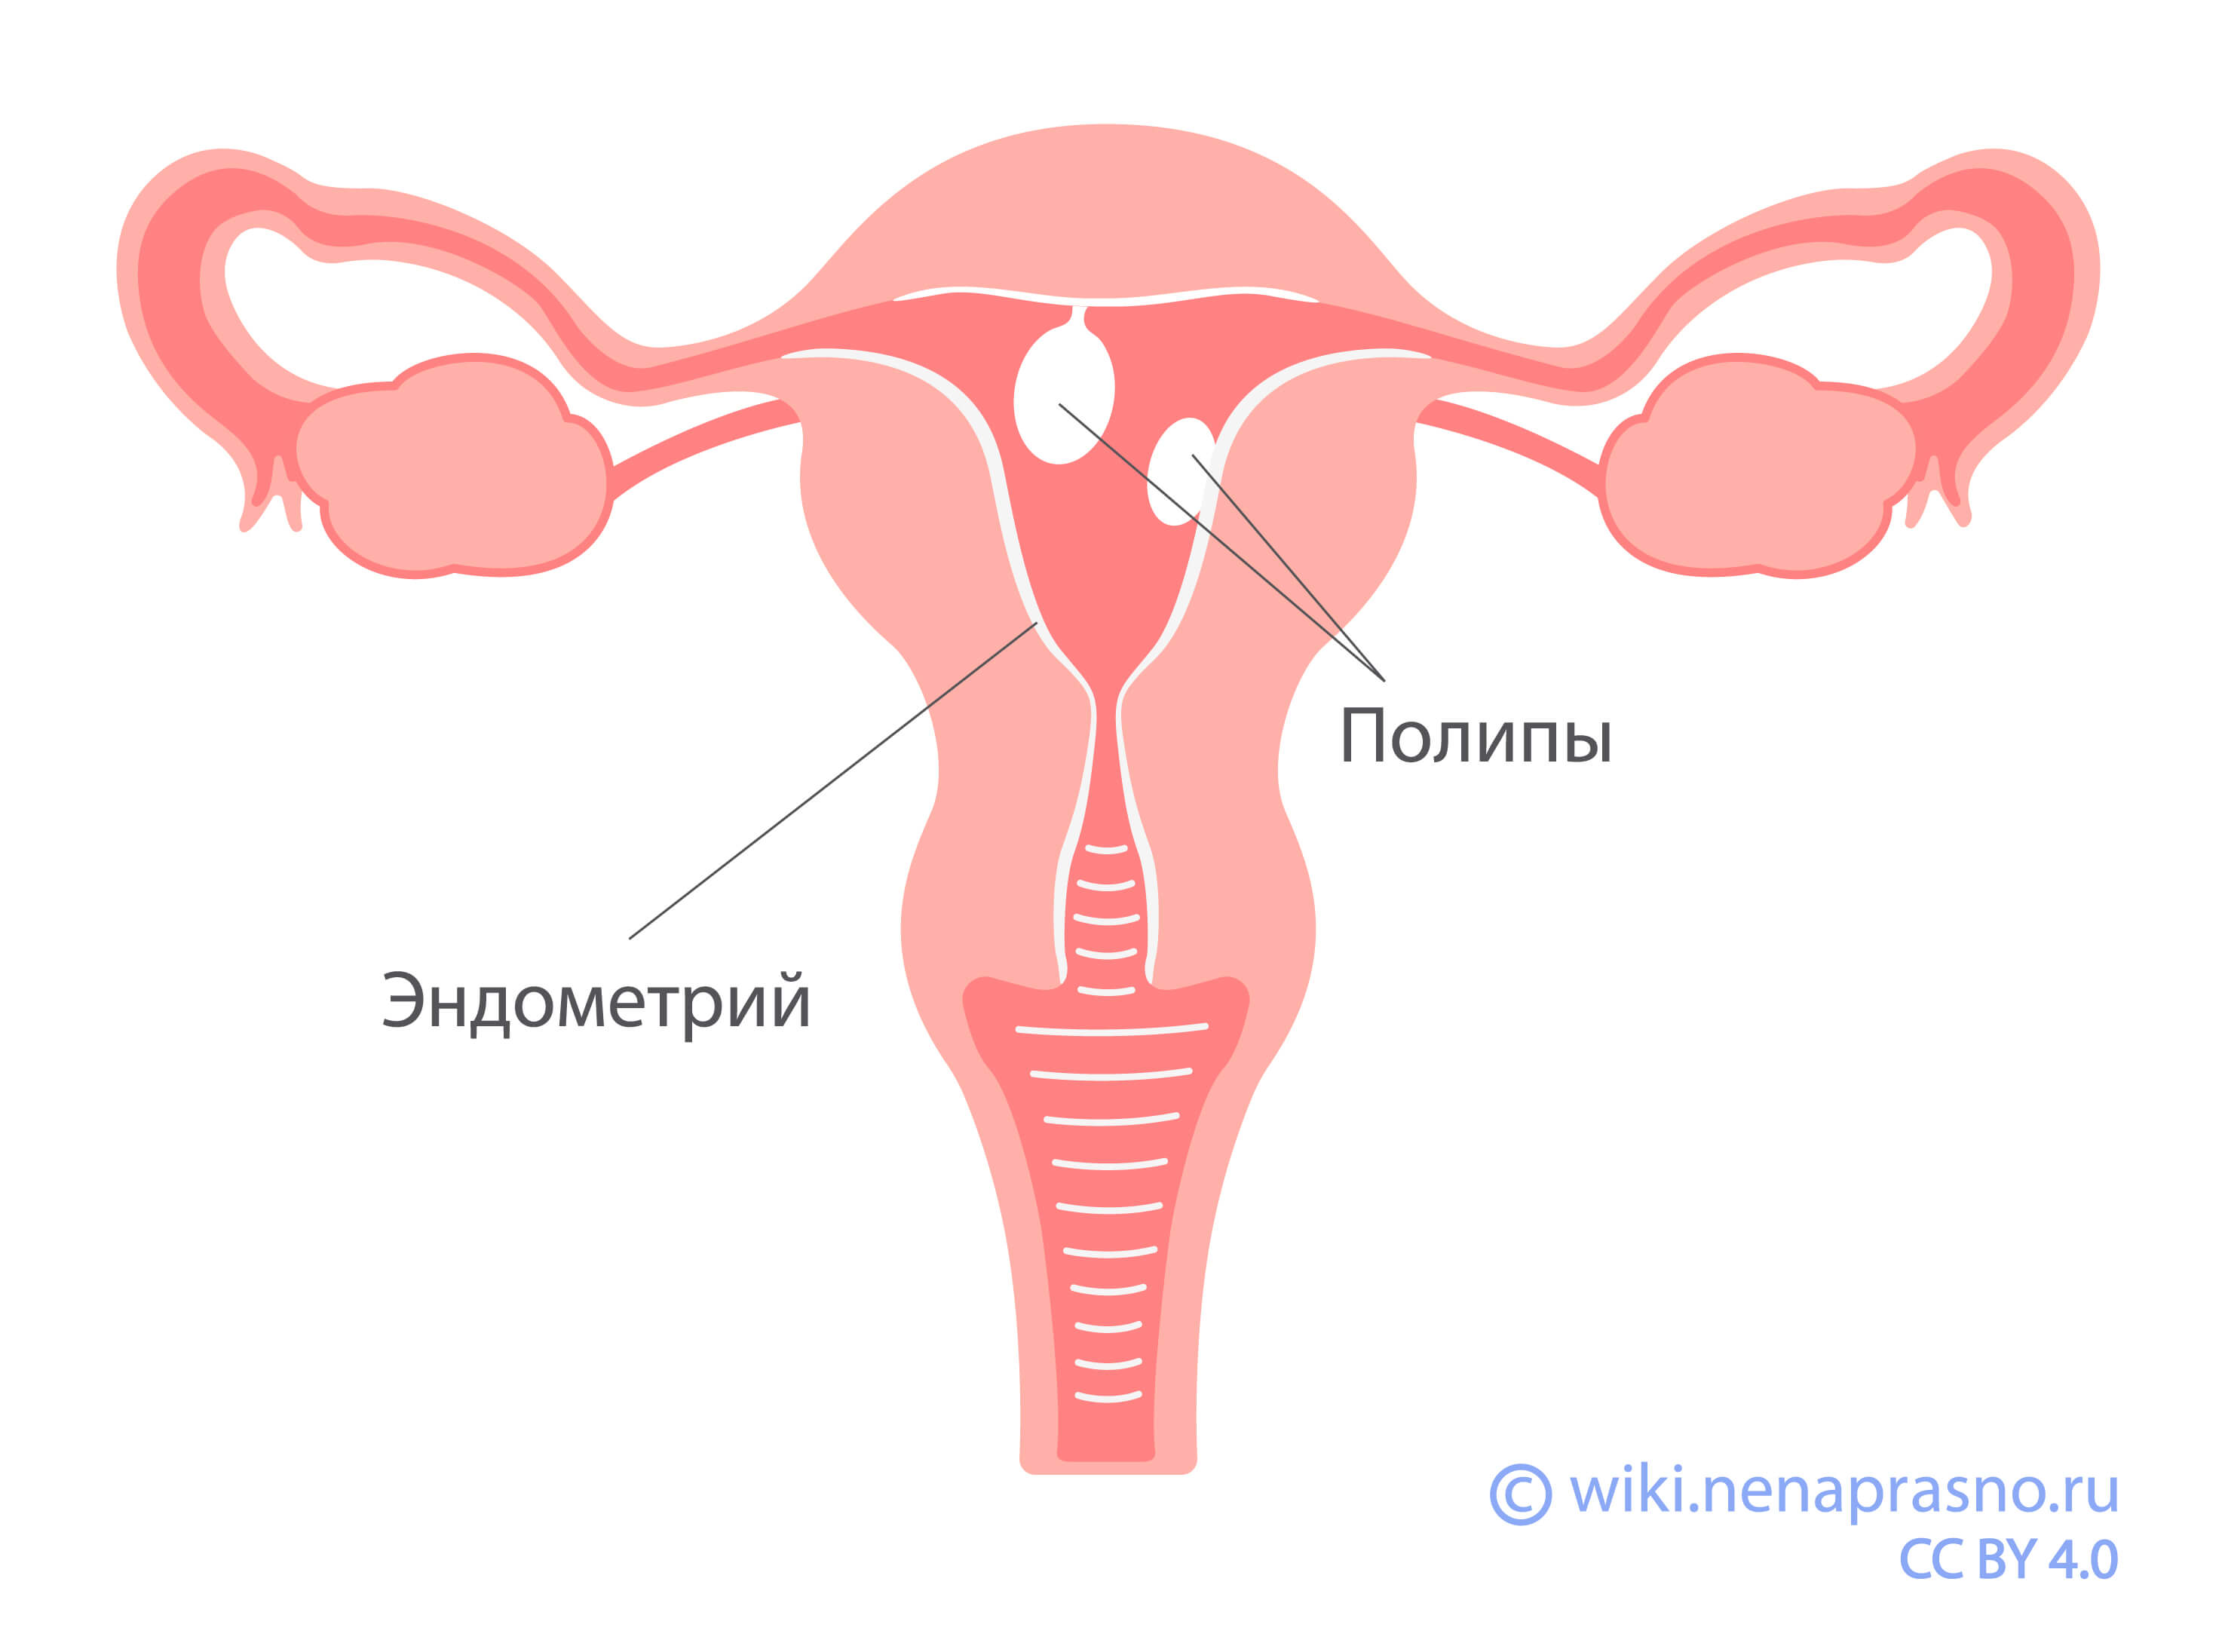 может ли быть оргазм при удалении матки и яичников фото 9